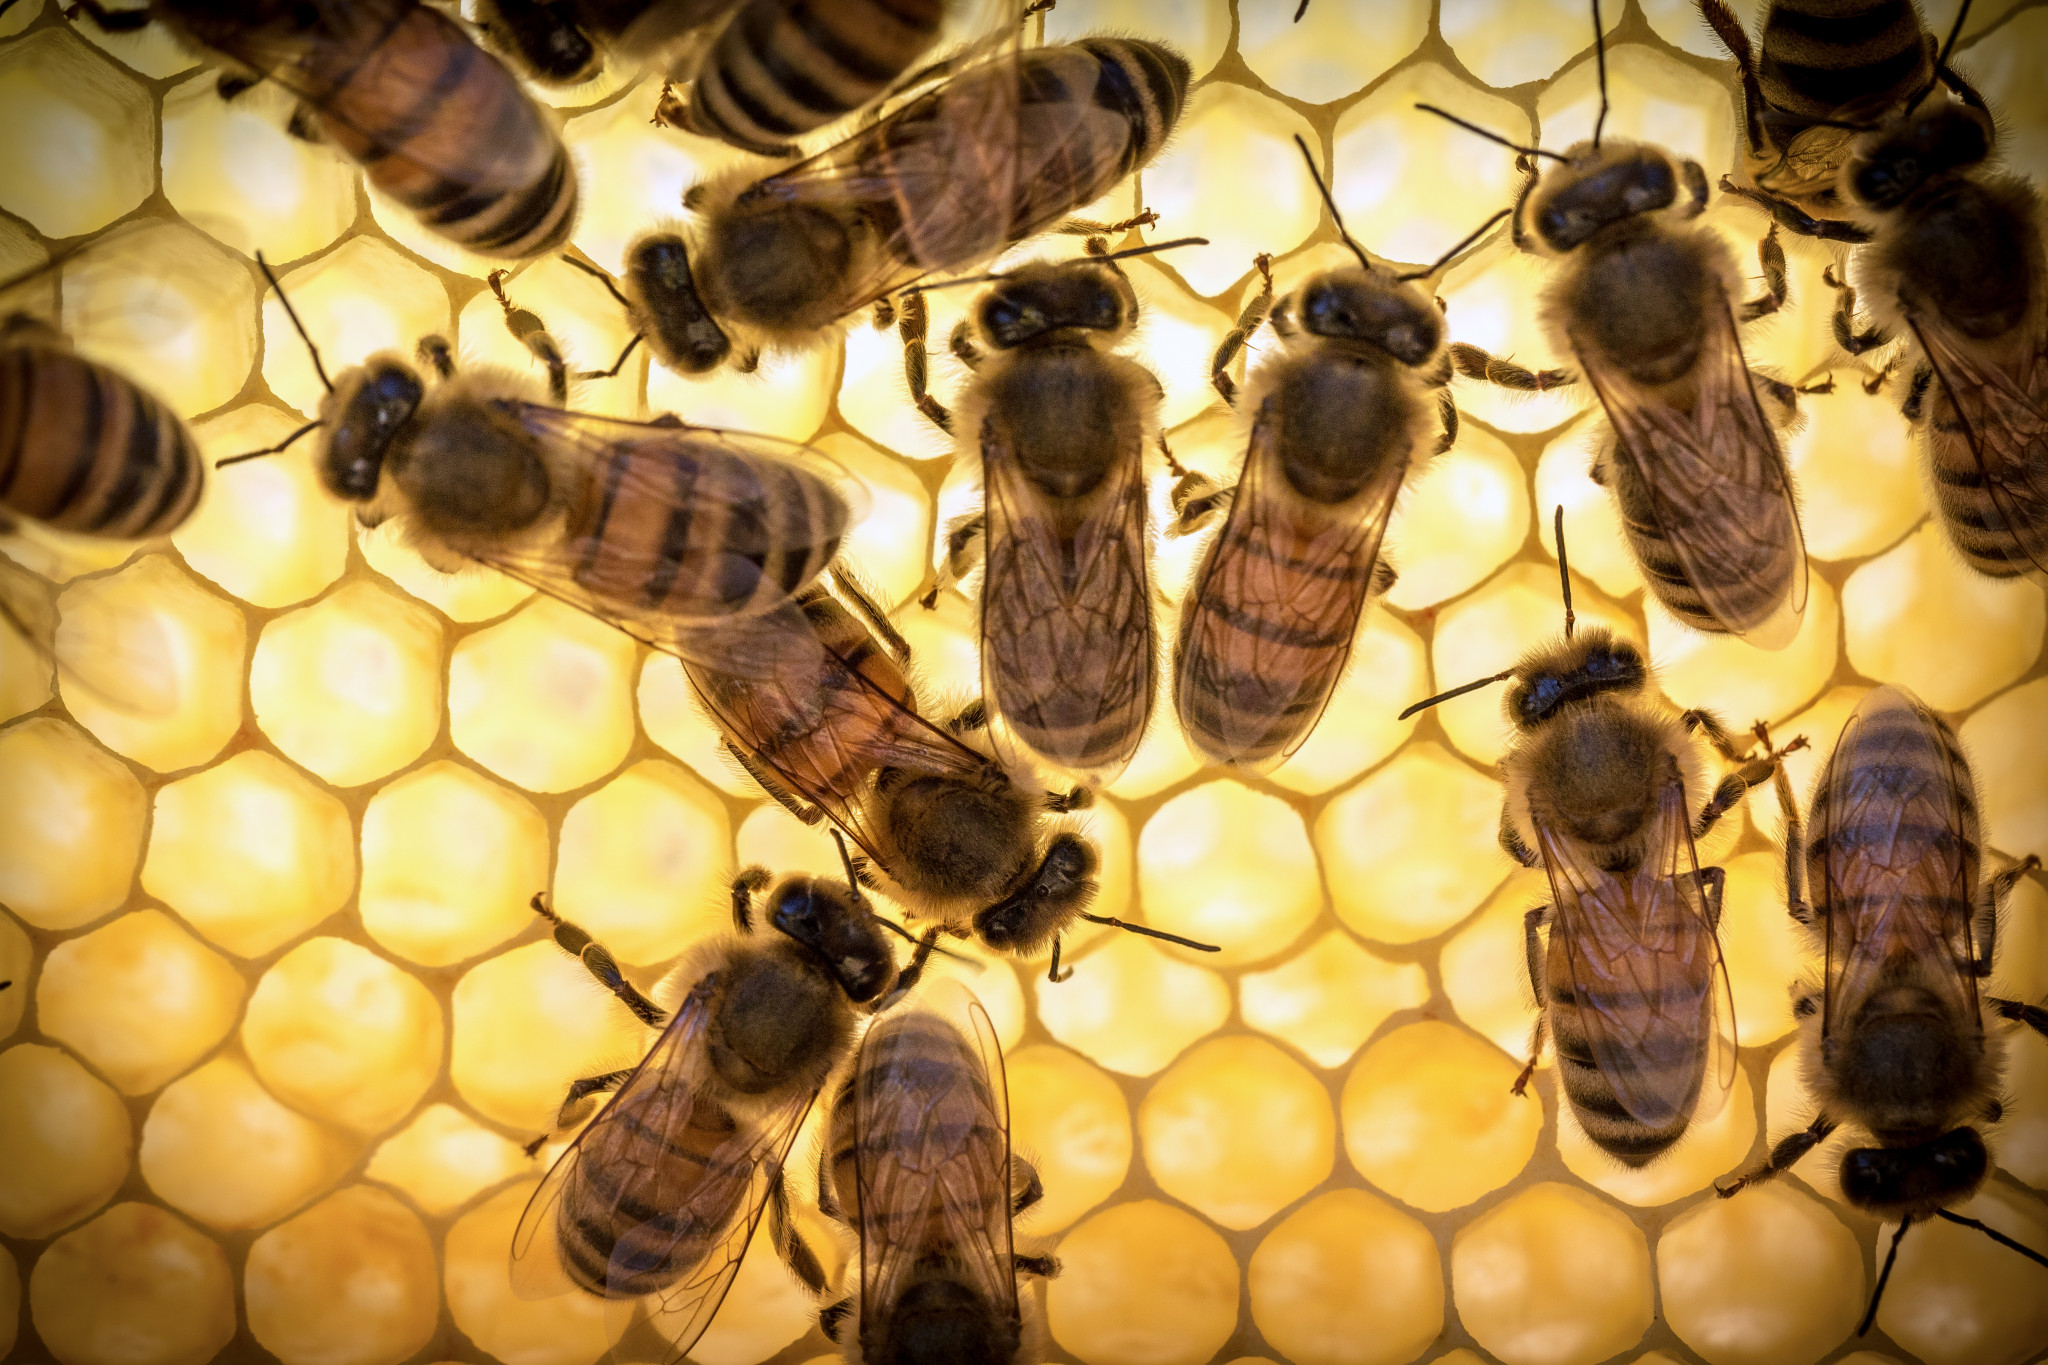 Bee royal jeleu nu este recomandat să utilizați noaptea, deoarece sub influența sa crește activitatea nervoasă și posibila insomnie